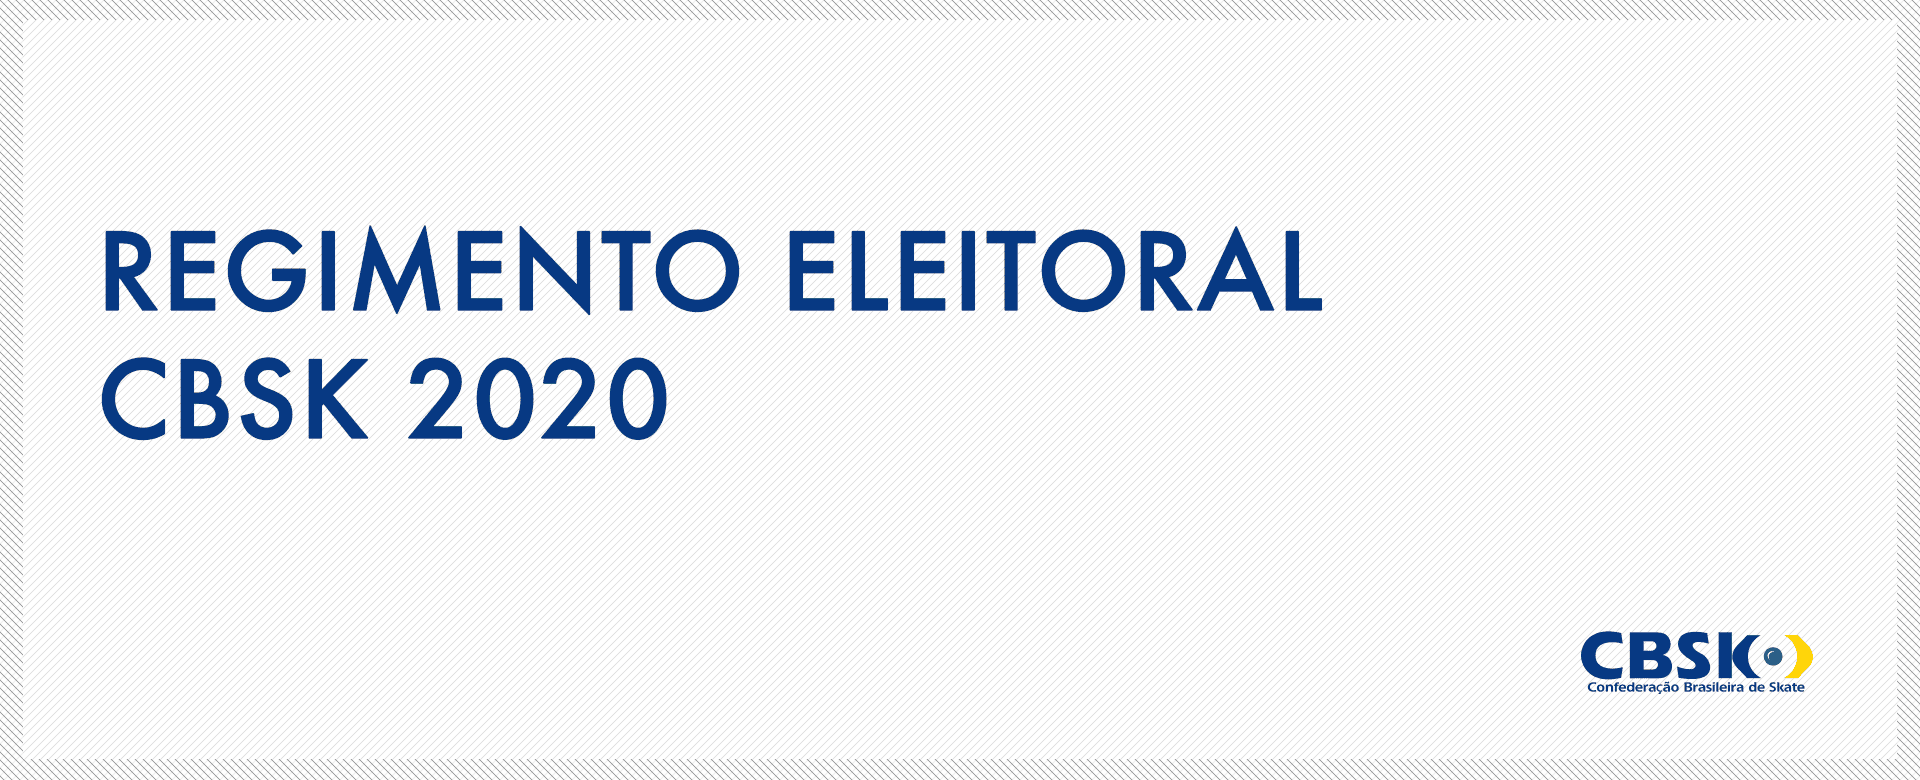 CBSk divulga regimento eleitoral para pleito de 2020